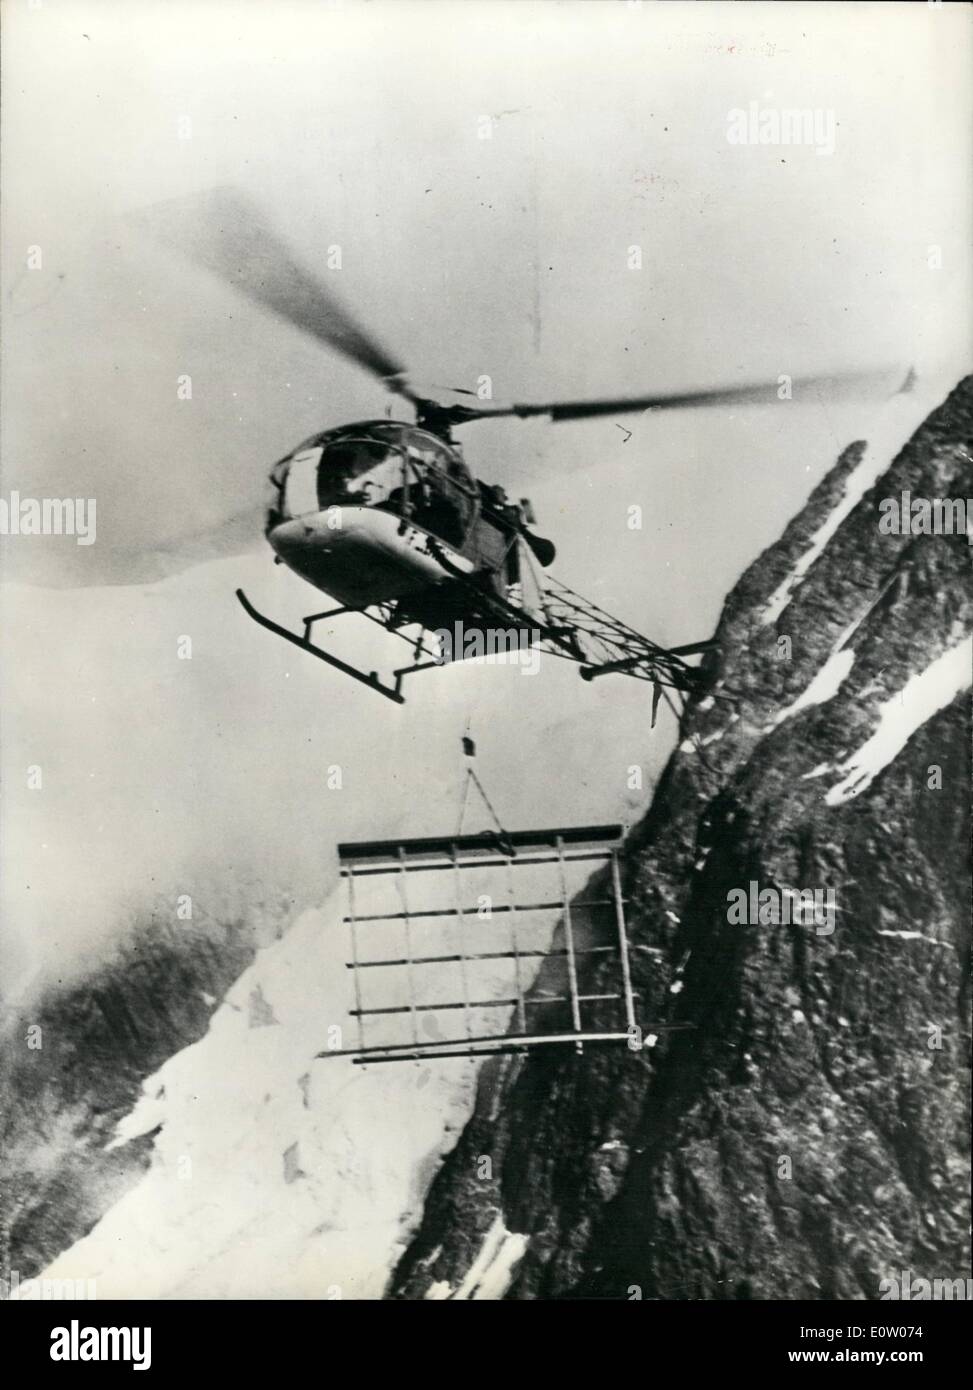 10 octobre 1960 - hélicoptère pour des transports : les hélicoptères sont une aide précieuse où les transports routiers sont rendues difficiles par de hautes montagnes. Photo montre un ''Alouette'' le déchargement du matériel pour la construction d'une maison préfabriqué quelque part dans les Alpes françaises. Banque D'Images